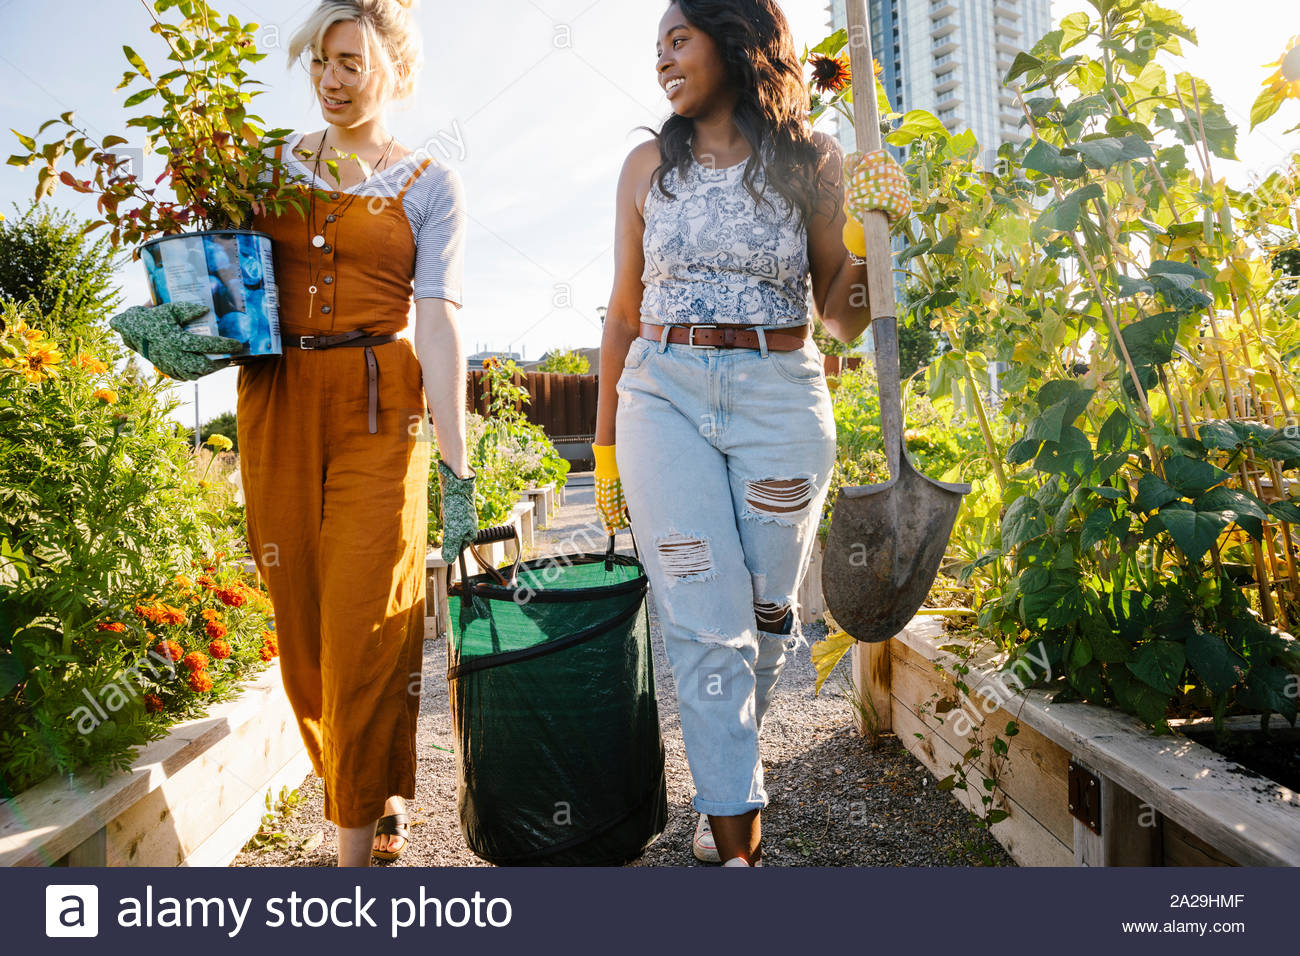 Equipo de transporte de las mujeres jóvenes en la soleada, jardín comunitario urbano Foto de stock